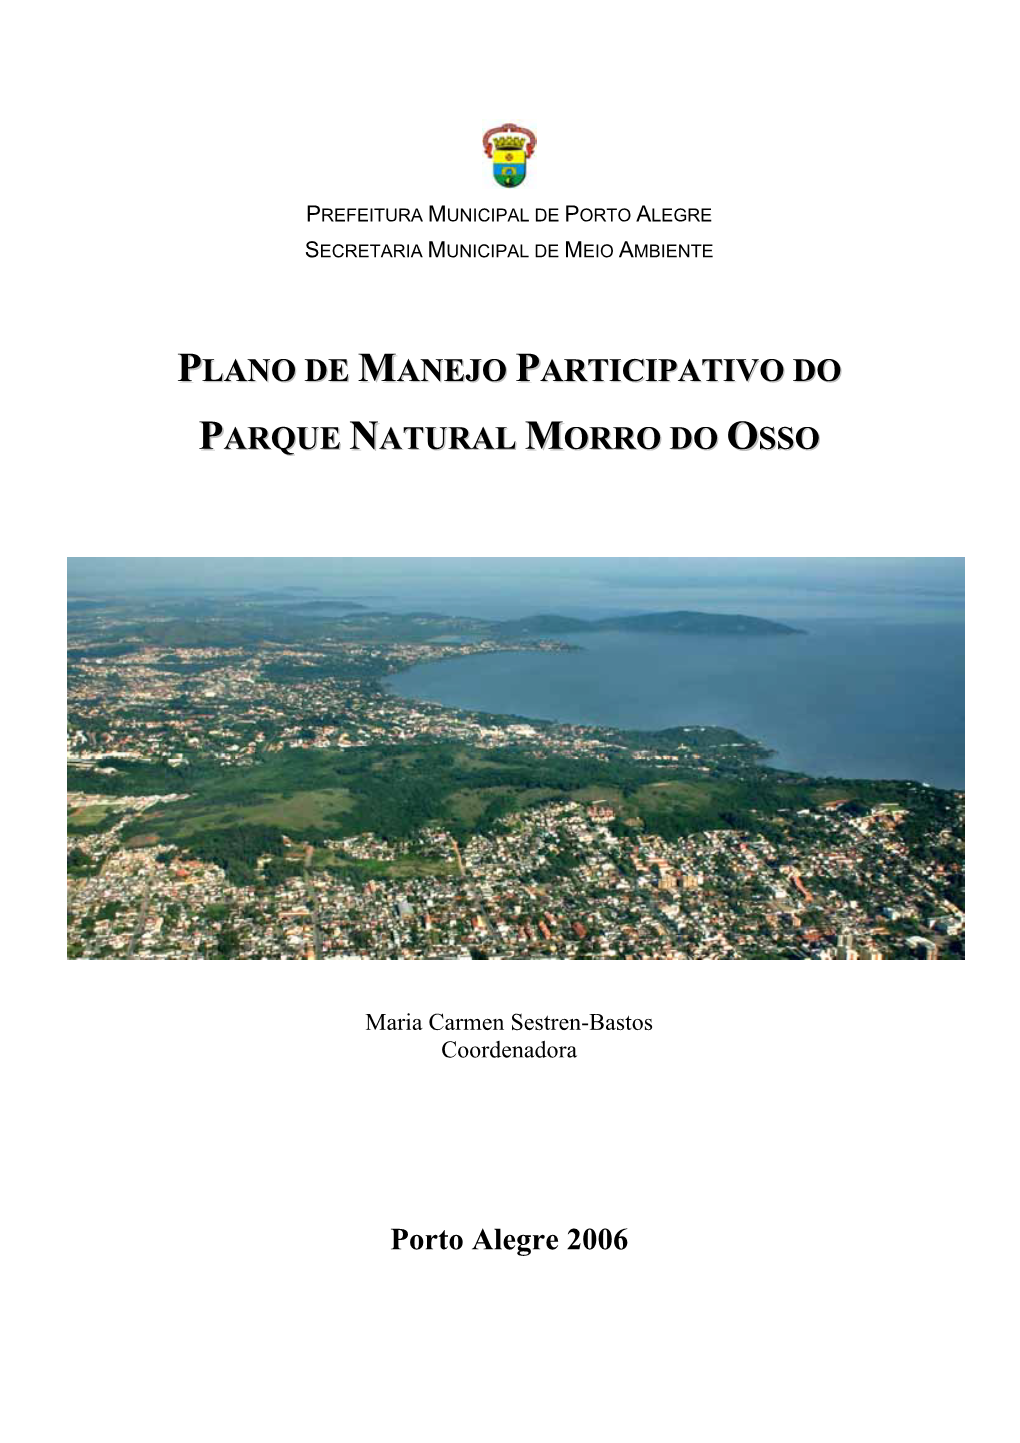 Plano De Manejo Participativo Do Parque Natural Morro Do Osso/ Maria Carmen Sestren-Bastos (Cood.), Porto Alegre, 2006